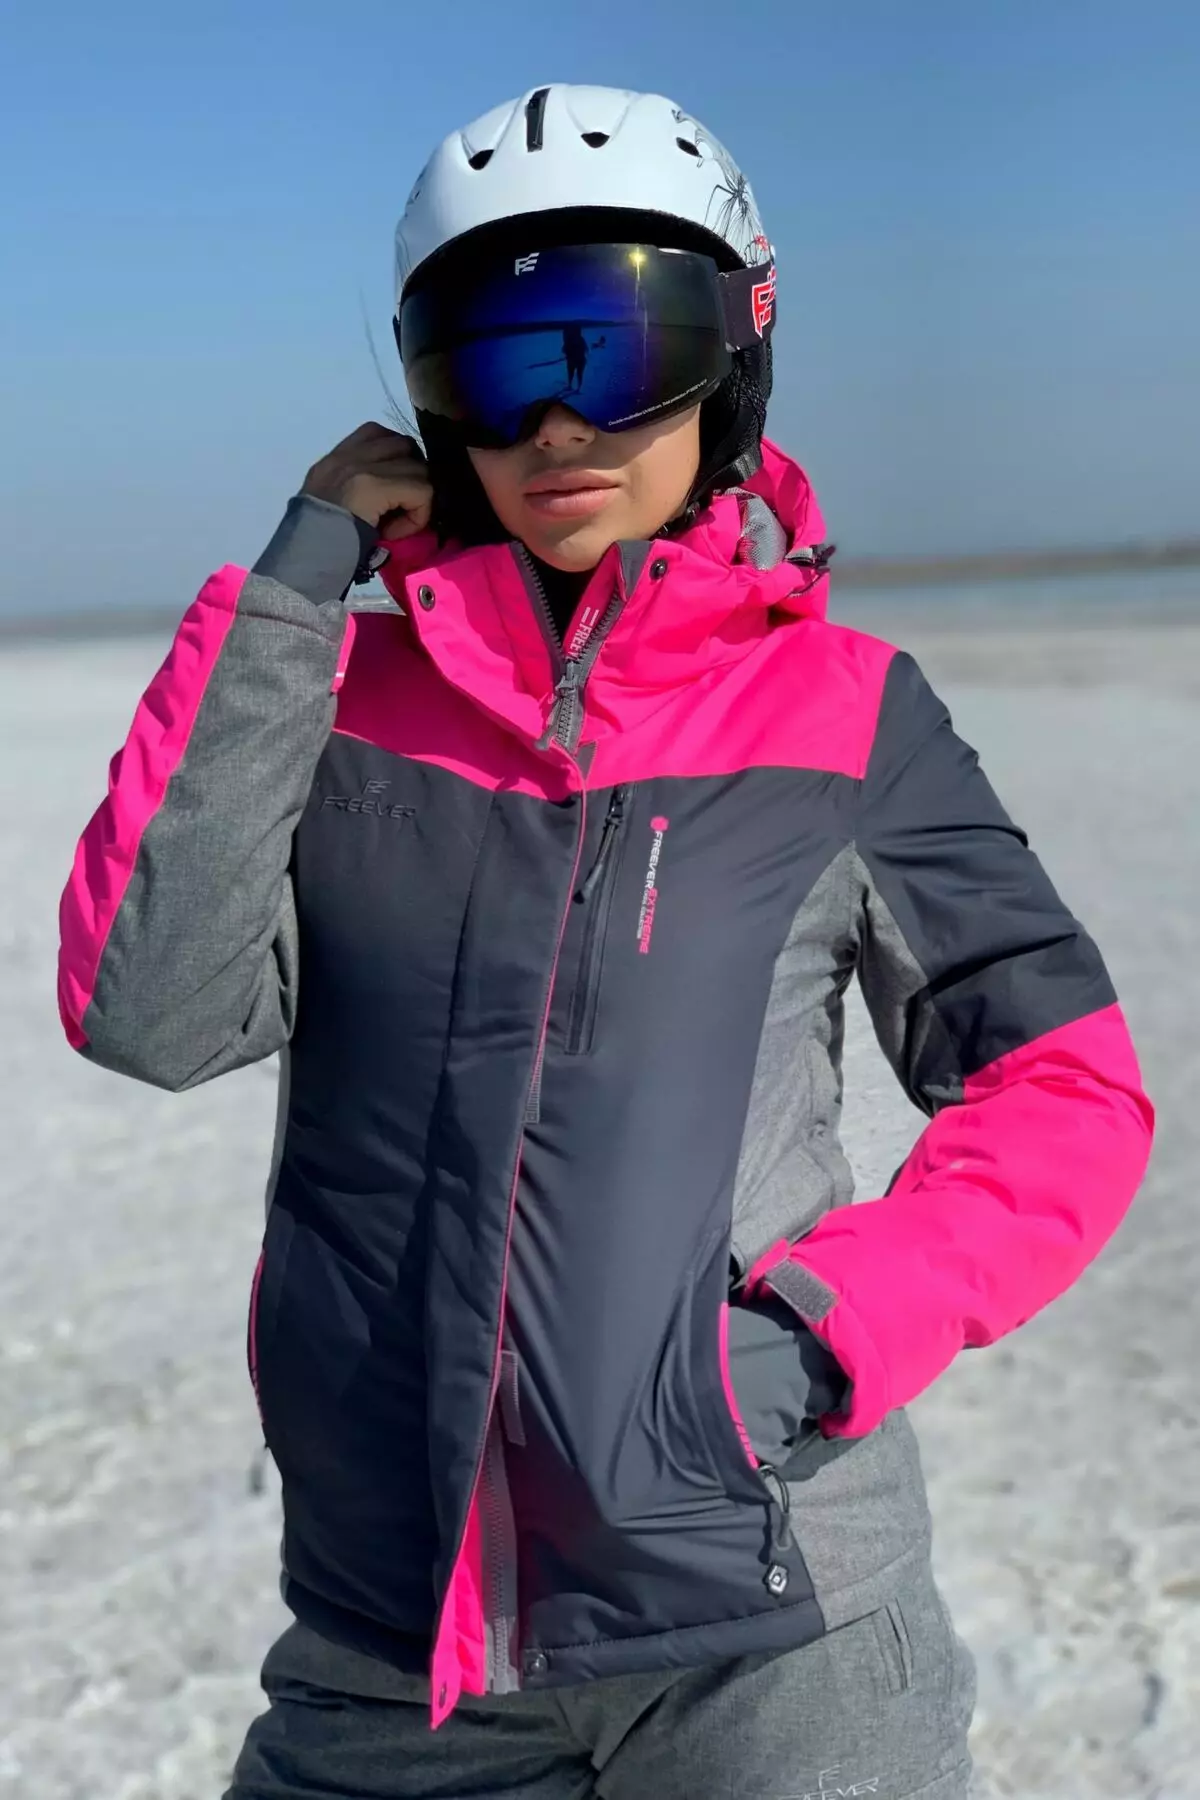 Ski Jacket: Női téli kabát sífutás, bemelegítő gyermekek és felnőtt síelő dzsekik. Hogyan válasszunk a korcsolyázáshoz? 20201_27